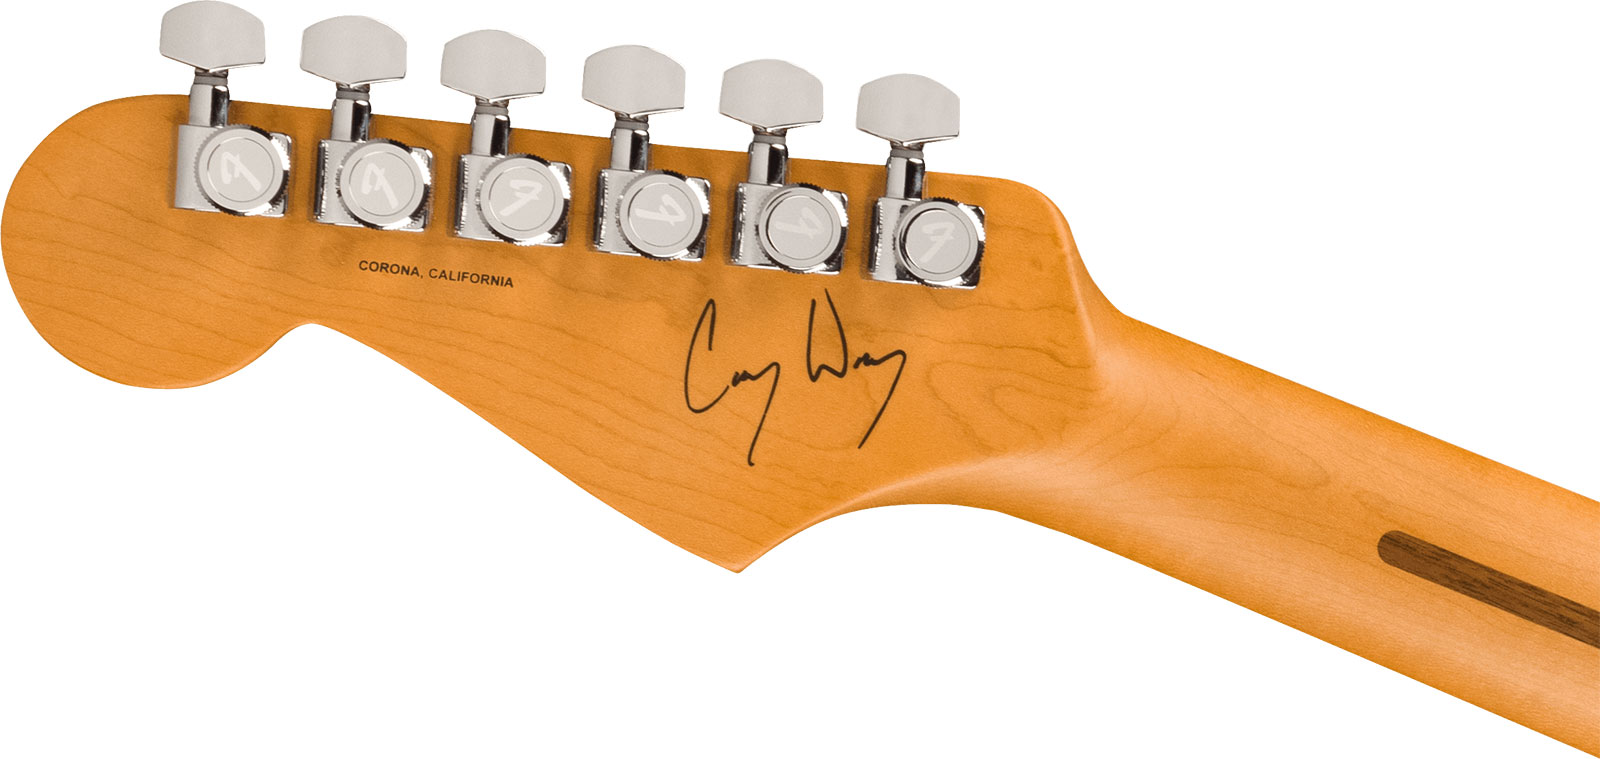 Fender Cory Wong Strat Ltd Signature Usa Stss Trem Rw - Daphne Blue - Elektrische gitaar in Str-vorm - Variation 3